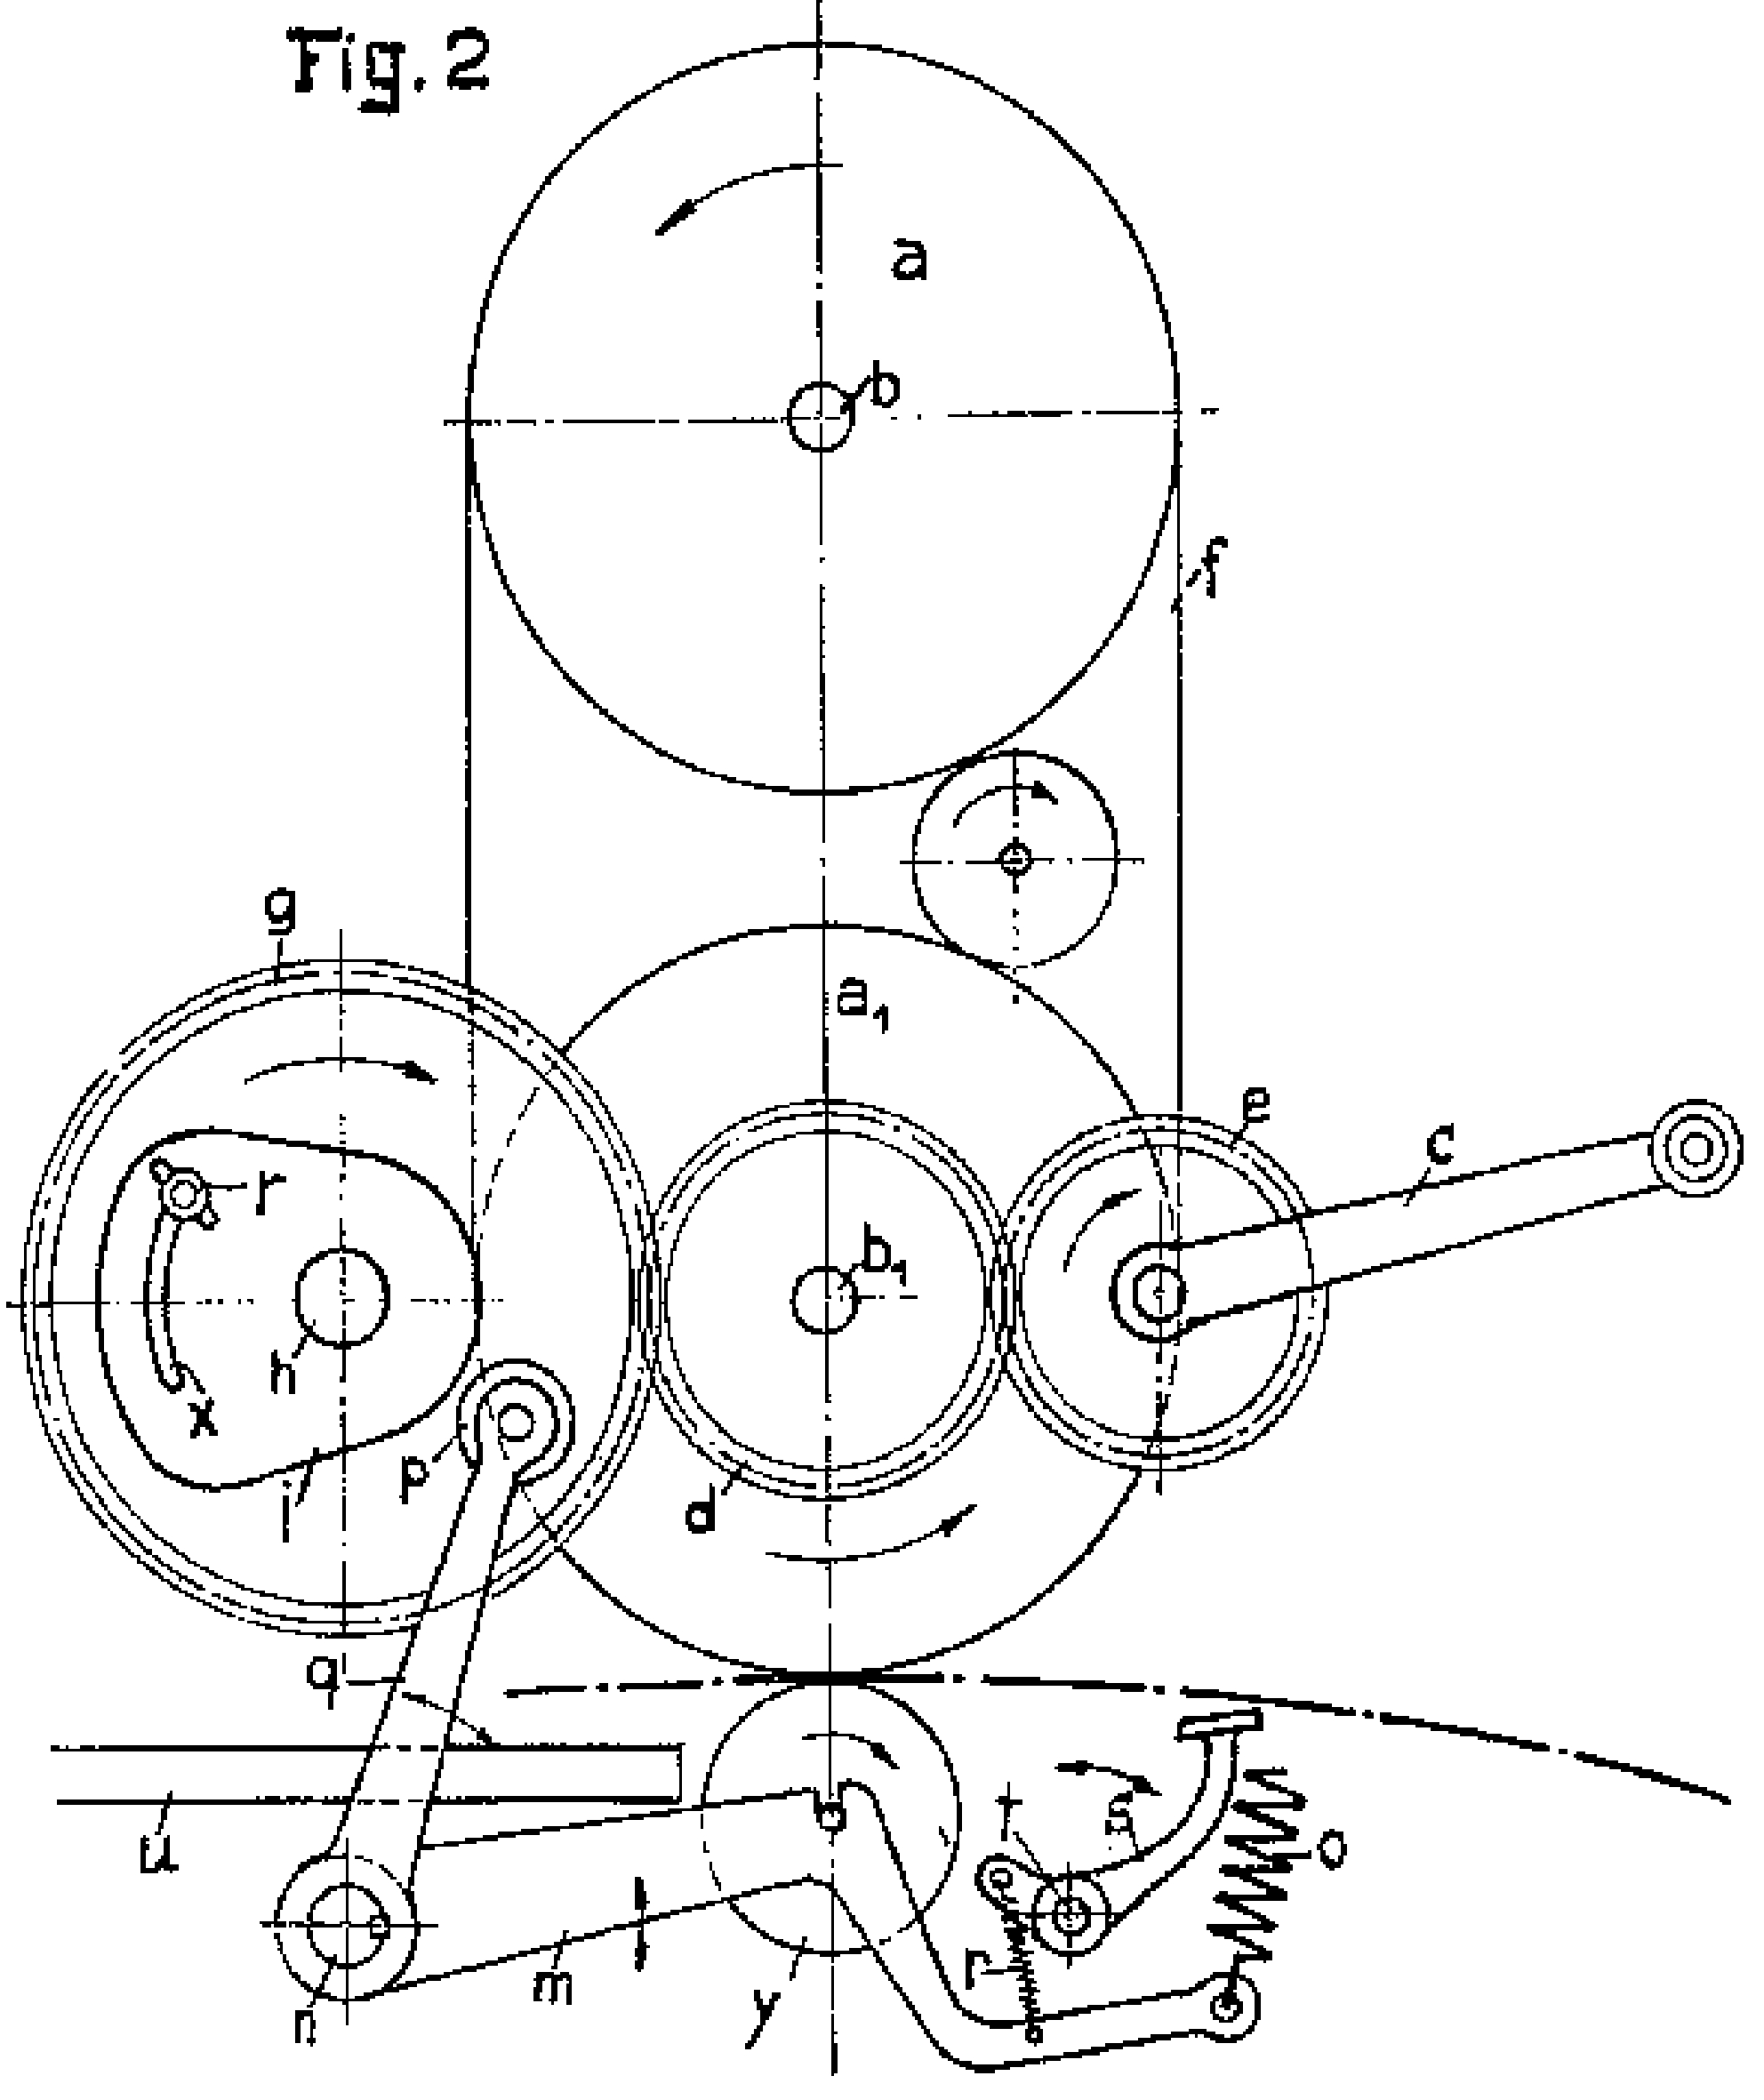 ROTO und Debego Werke Königslutter, Patentschrift zum ROTO-PREZIOSA, Patent 20.10.1927, DET270628, (GB270628A), 'Improvements in Impression-Controlling and Sheet-Registering Devices for Stencil-Duplicators and like Printing Machines'. Saugpostpapier befindet sich während des Vervielfältigungsvorganges zwischen unterer Drucktrommel a1 und Anpresswalze y, Papieranschlag s ist abgewinkelt, Deutsches Patent- und Markenamt, Europäisches Patentamt